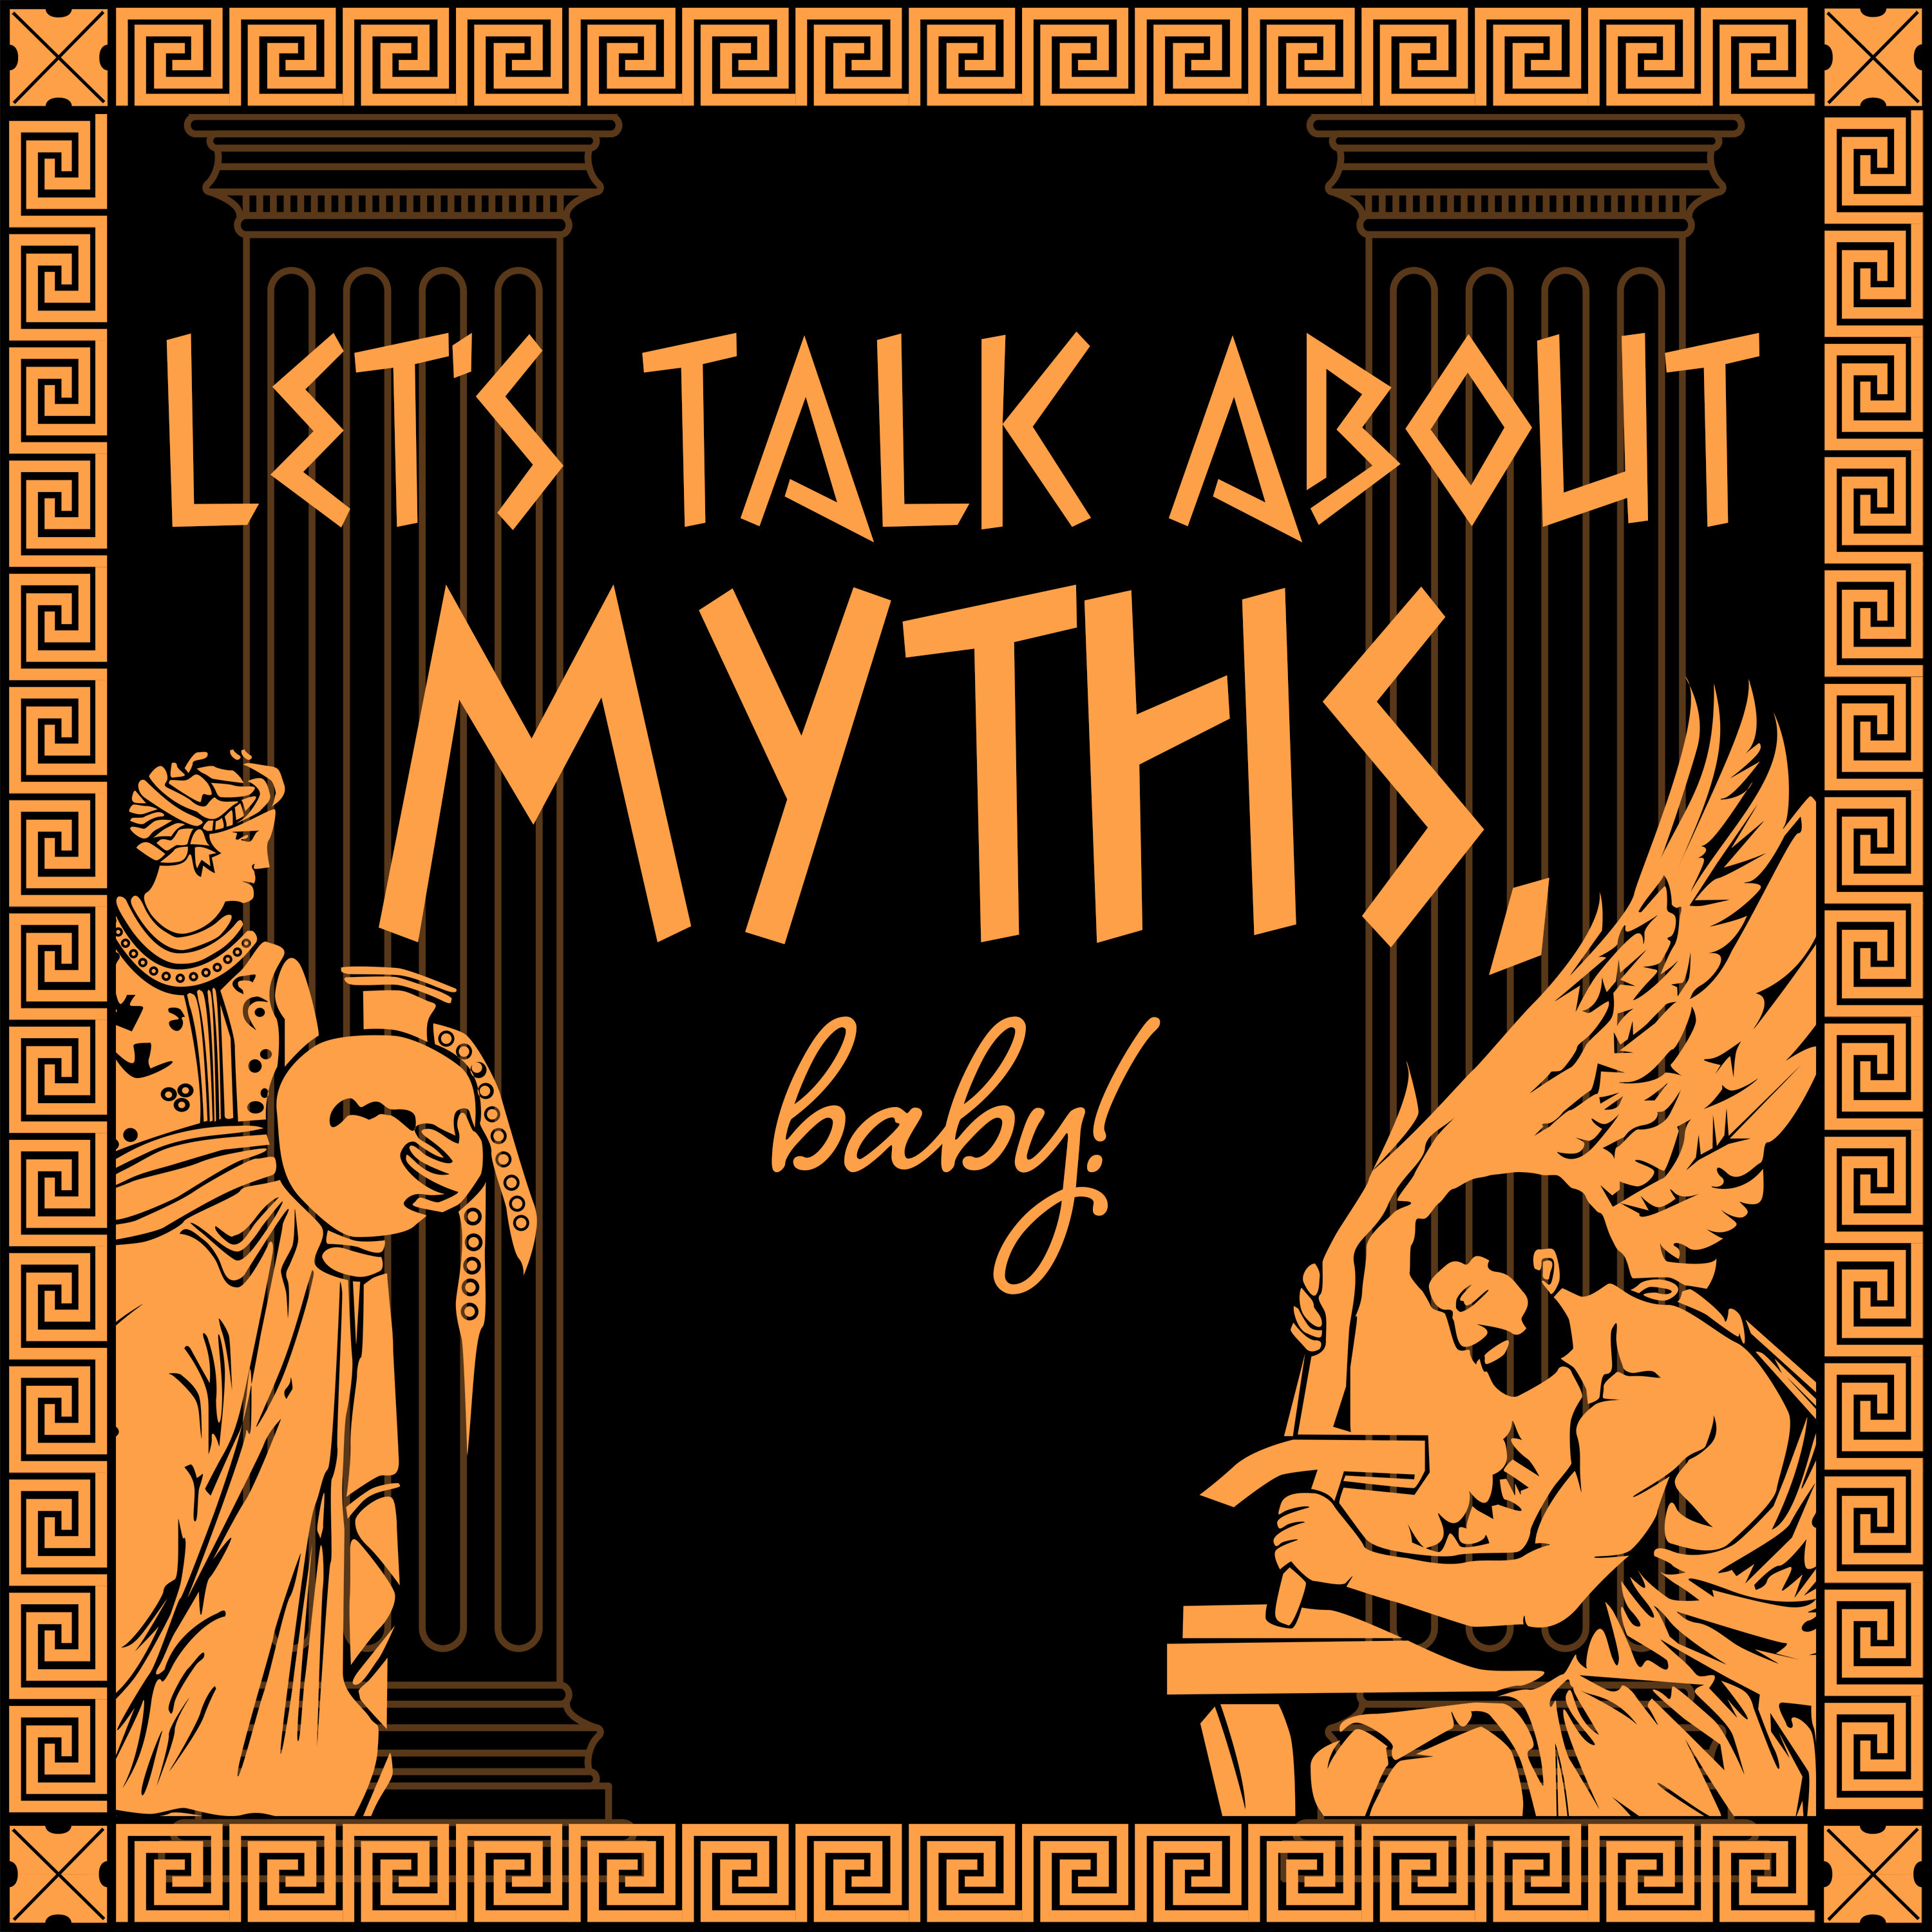 Let’s Talk About Myths, Baby! Greek & Roman Mythology Retold